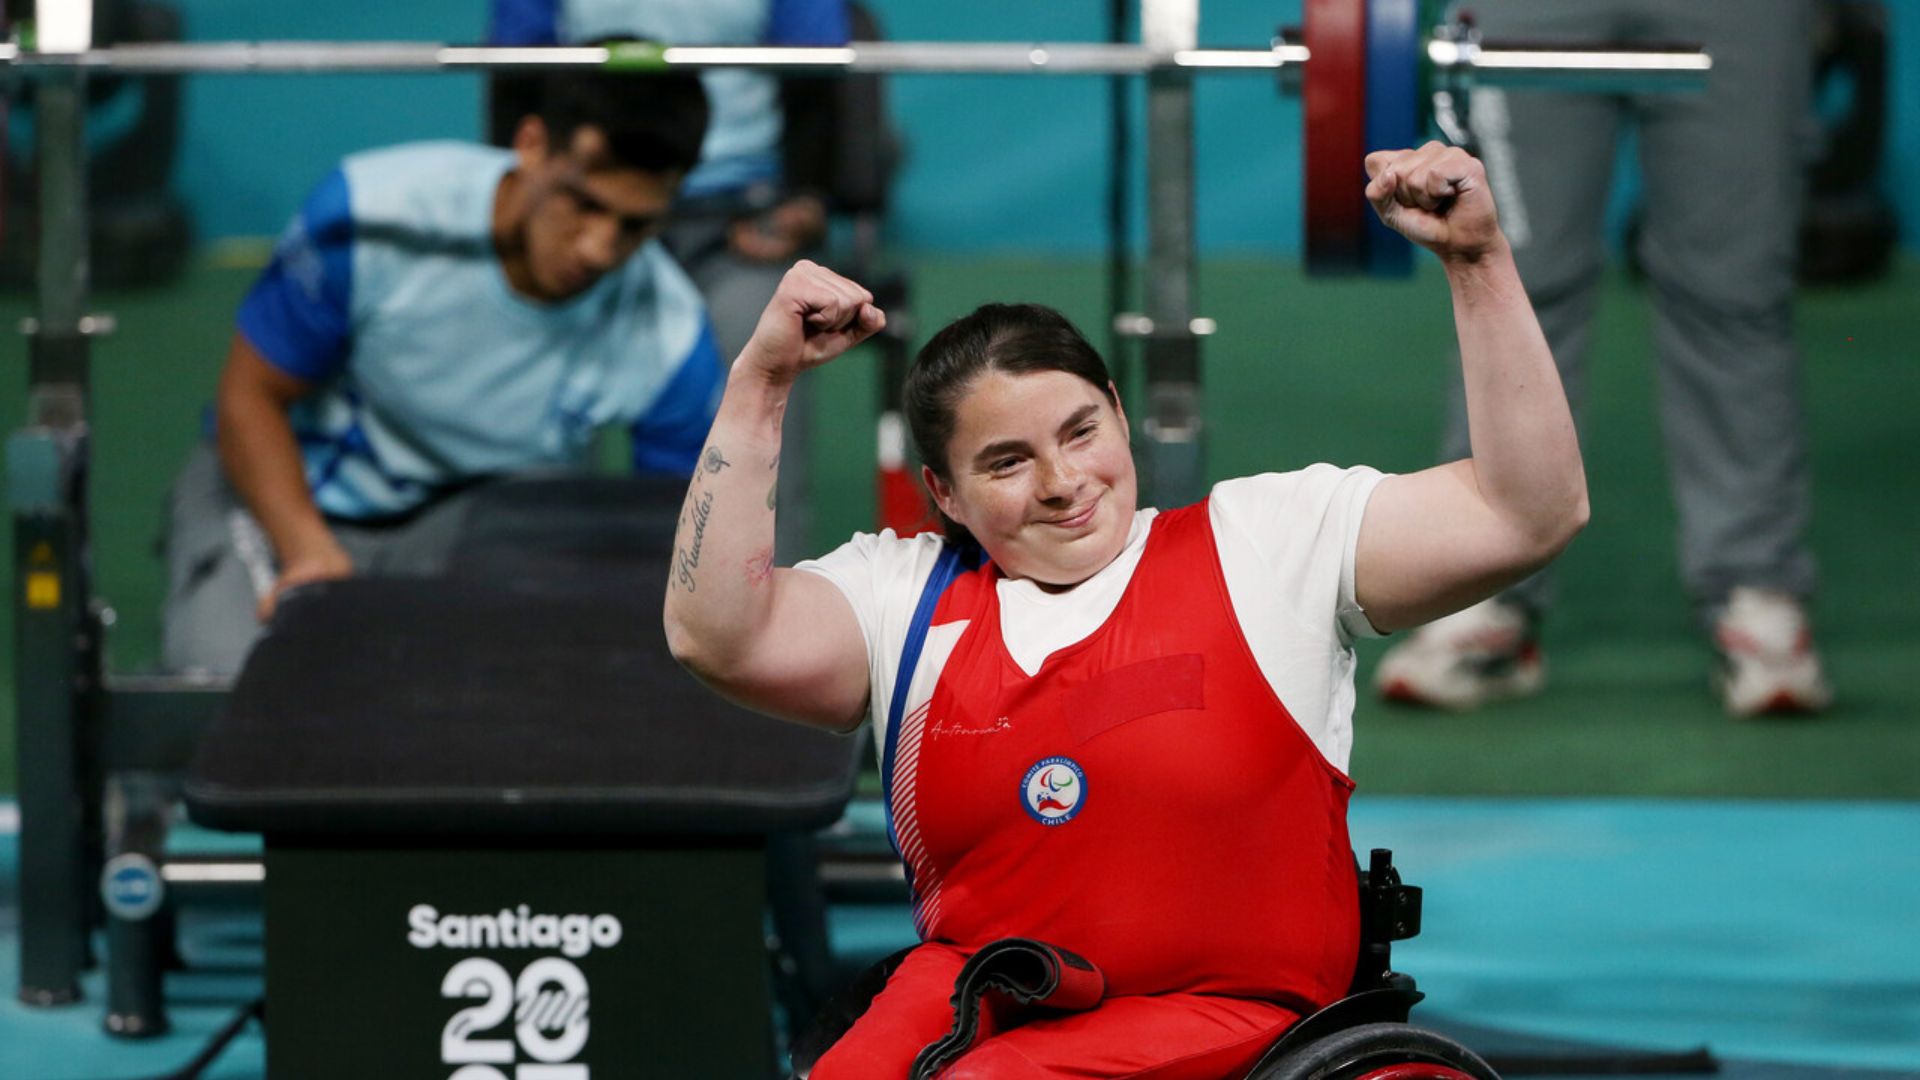 Gracias al Para powerlifting, Chile alcanza su mejor actuación parapanamericana